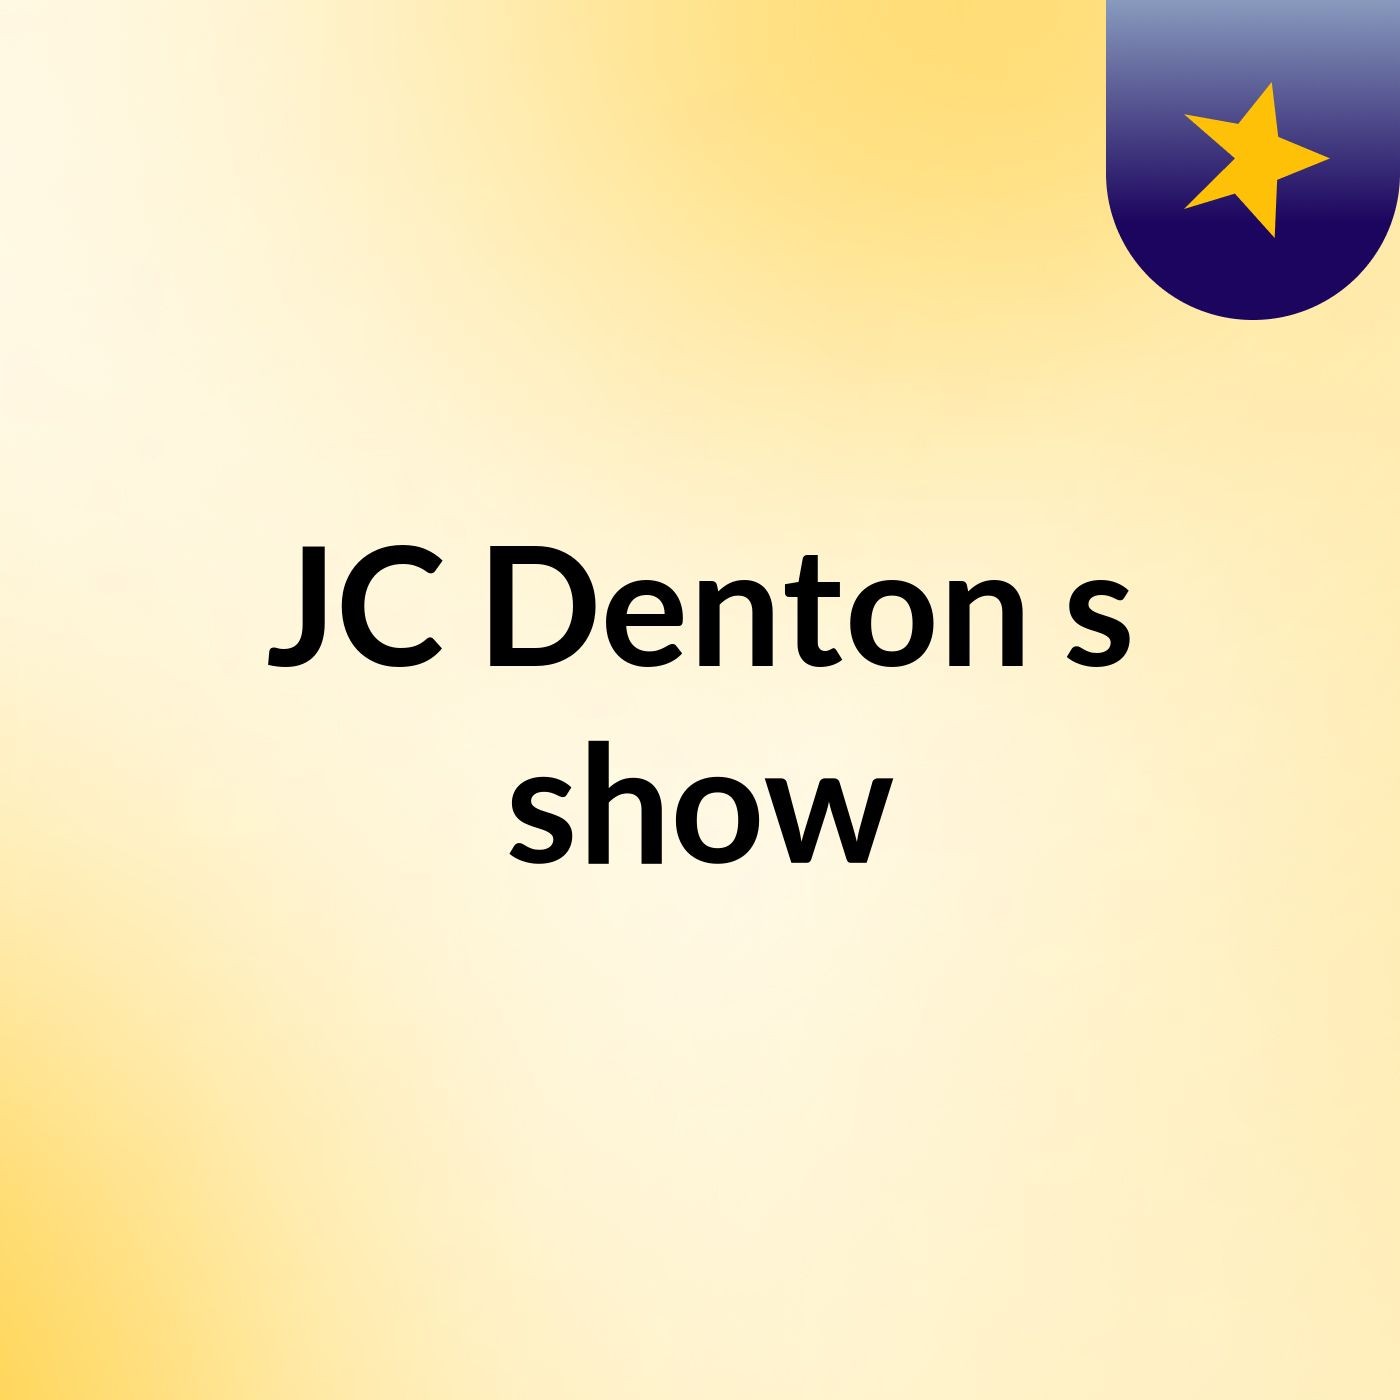 JC Denton's show